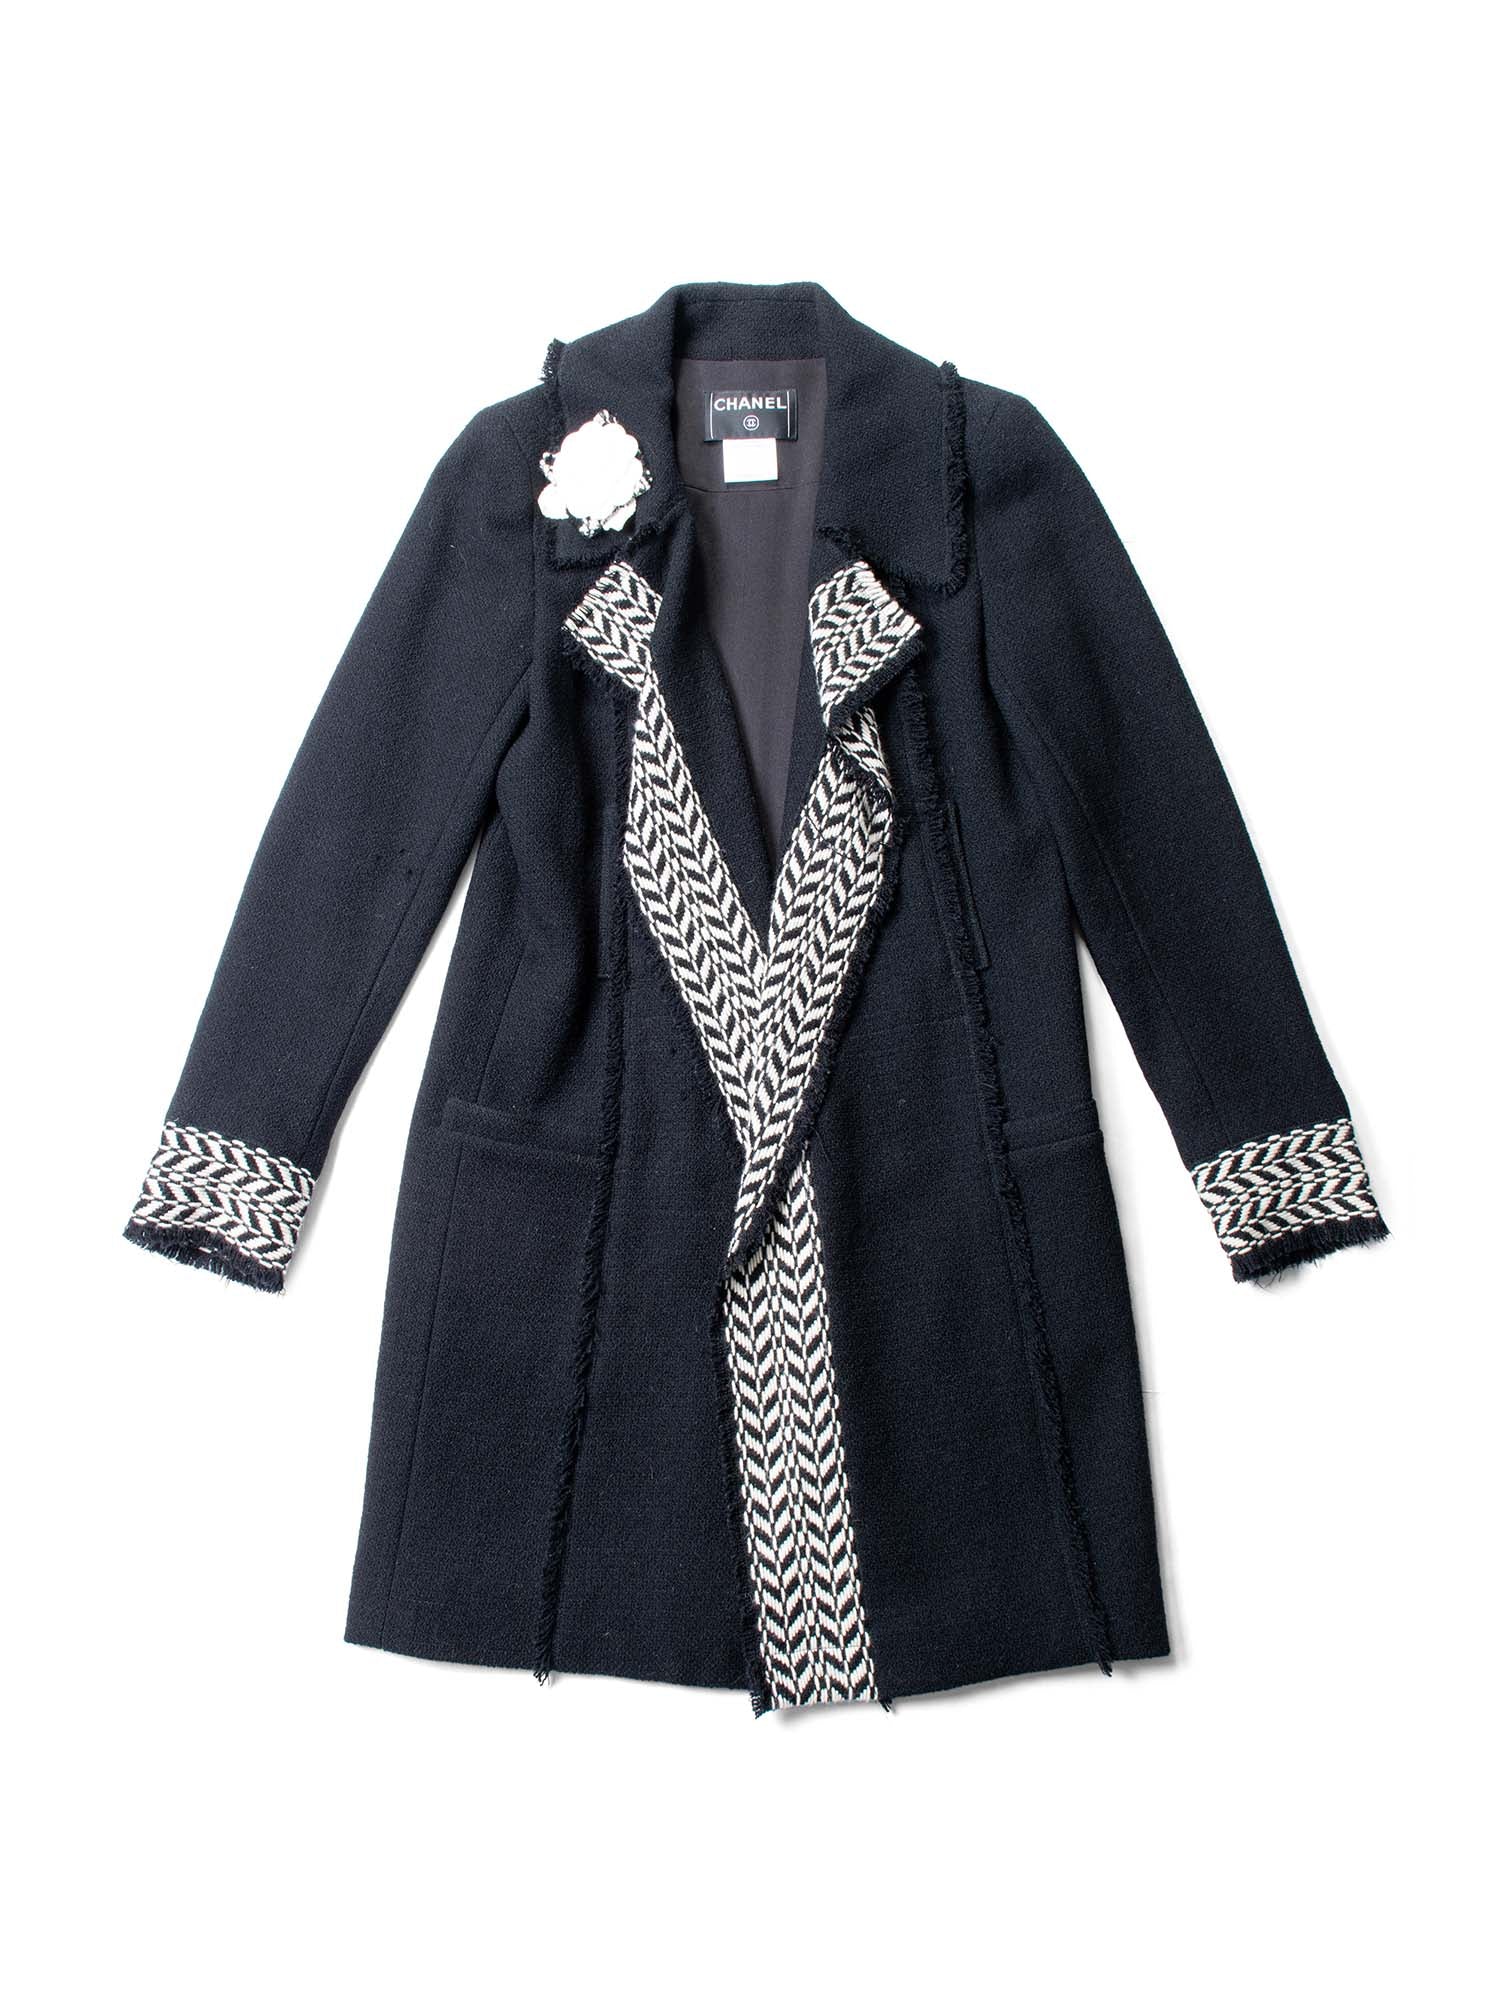 CHANEL Tweed Camellia Flower Open Jacket Black White-designer resale